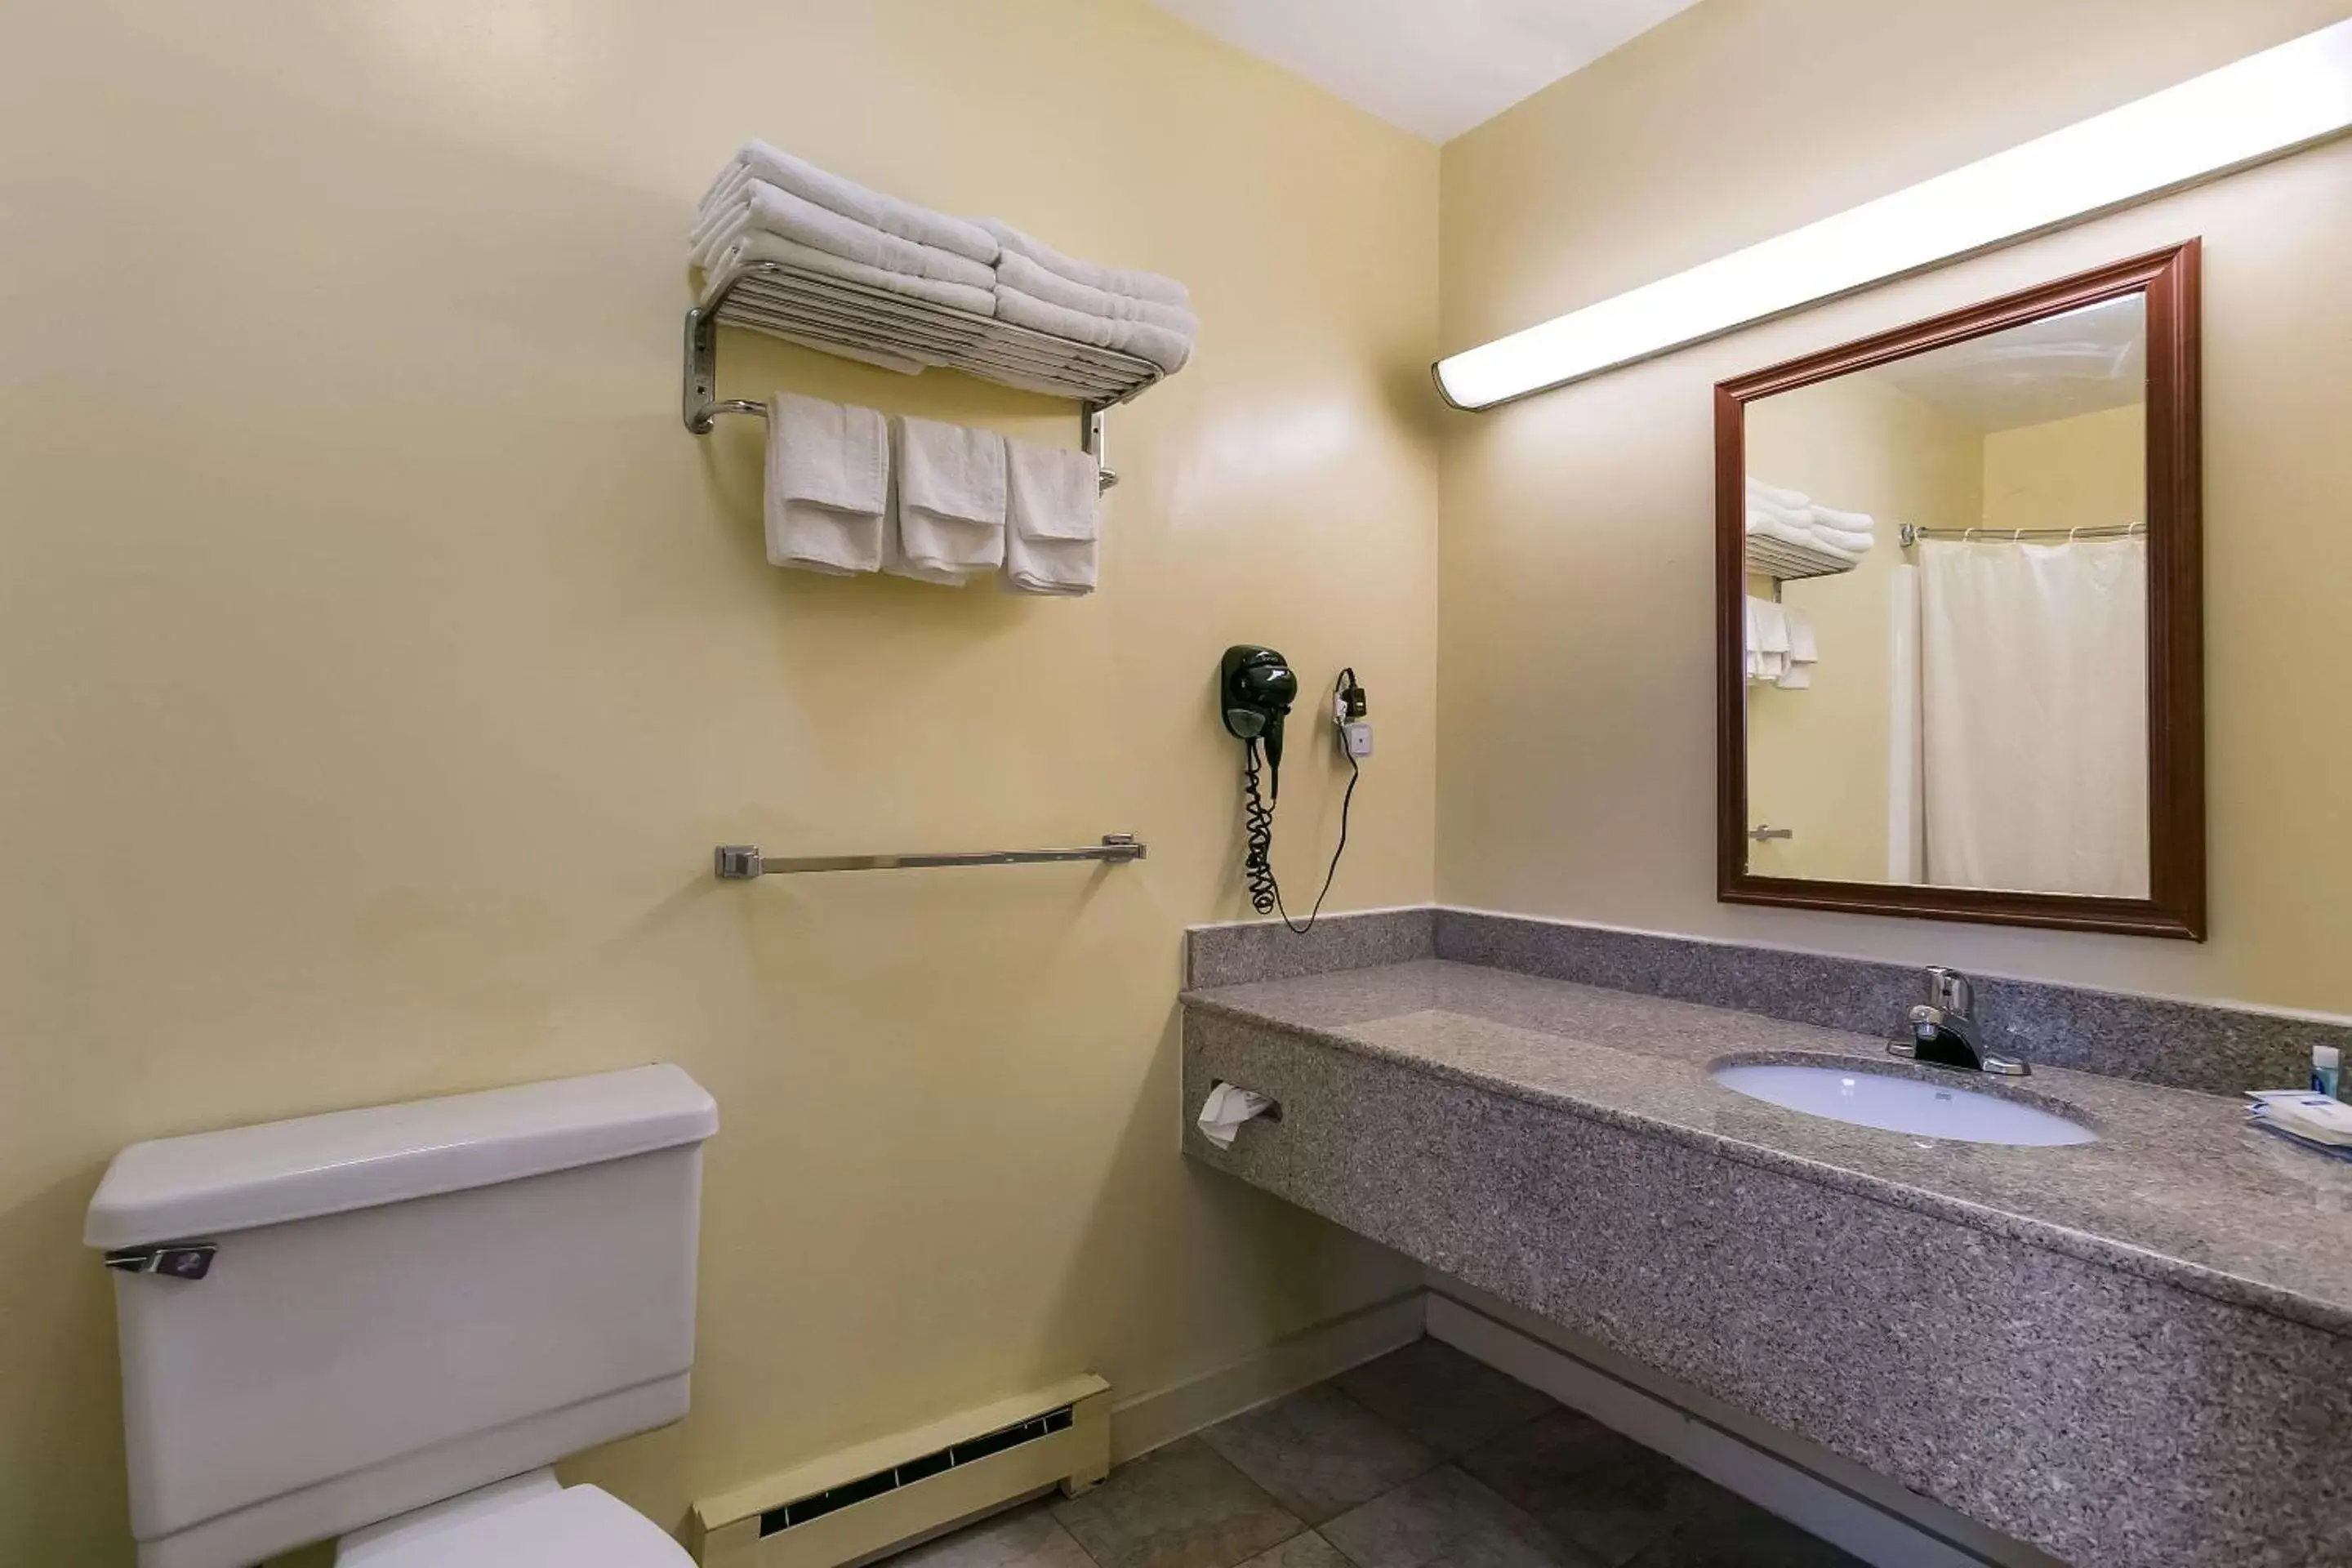 Bedroom, Bathroom in Rodeway Inn & Suites Hershey